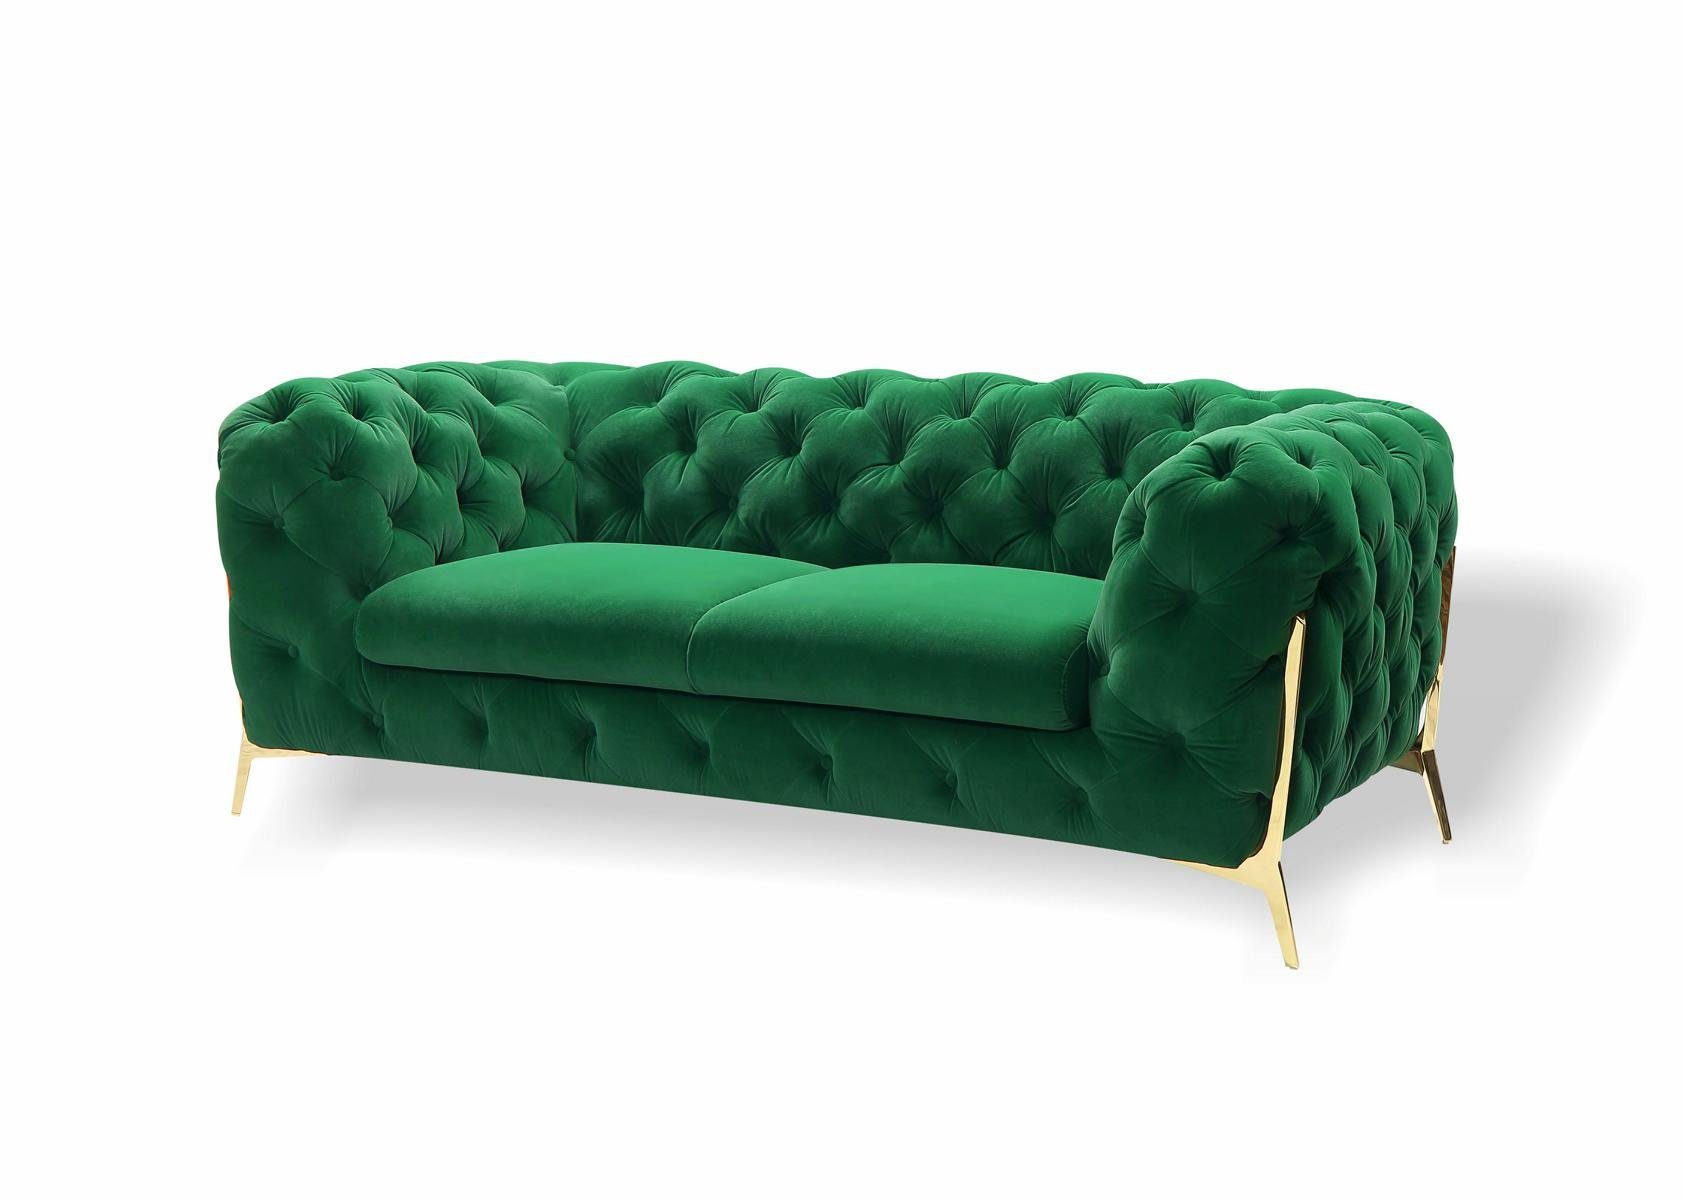 JVmoebel 2-Sitzer Sofa 2 Sitzer Klassische Chesterfield Sofas Couchen Polster, Made in Europa Grün